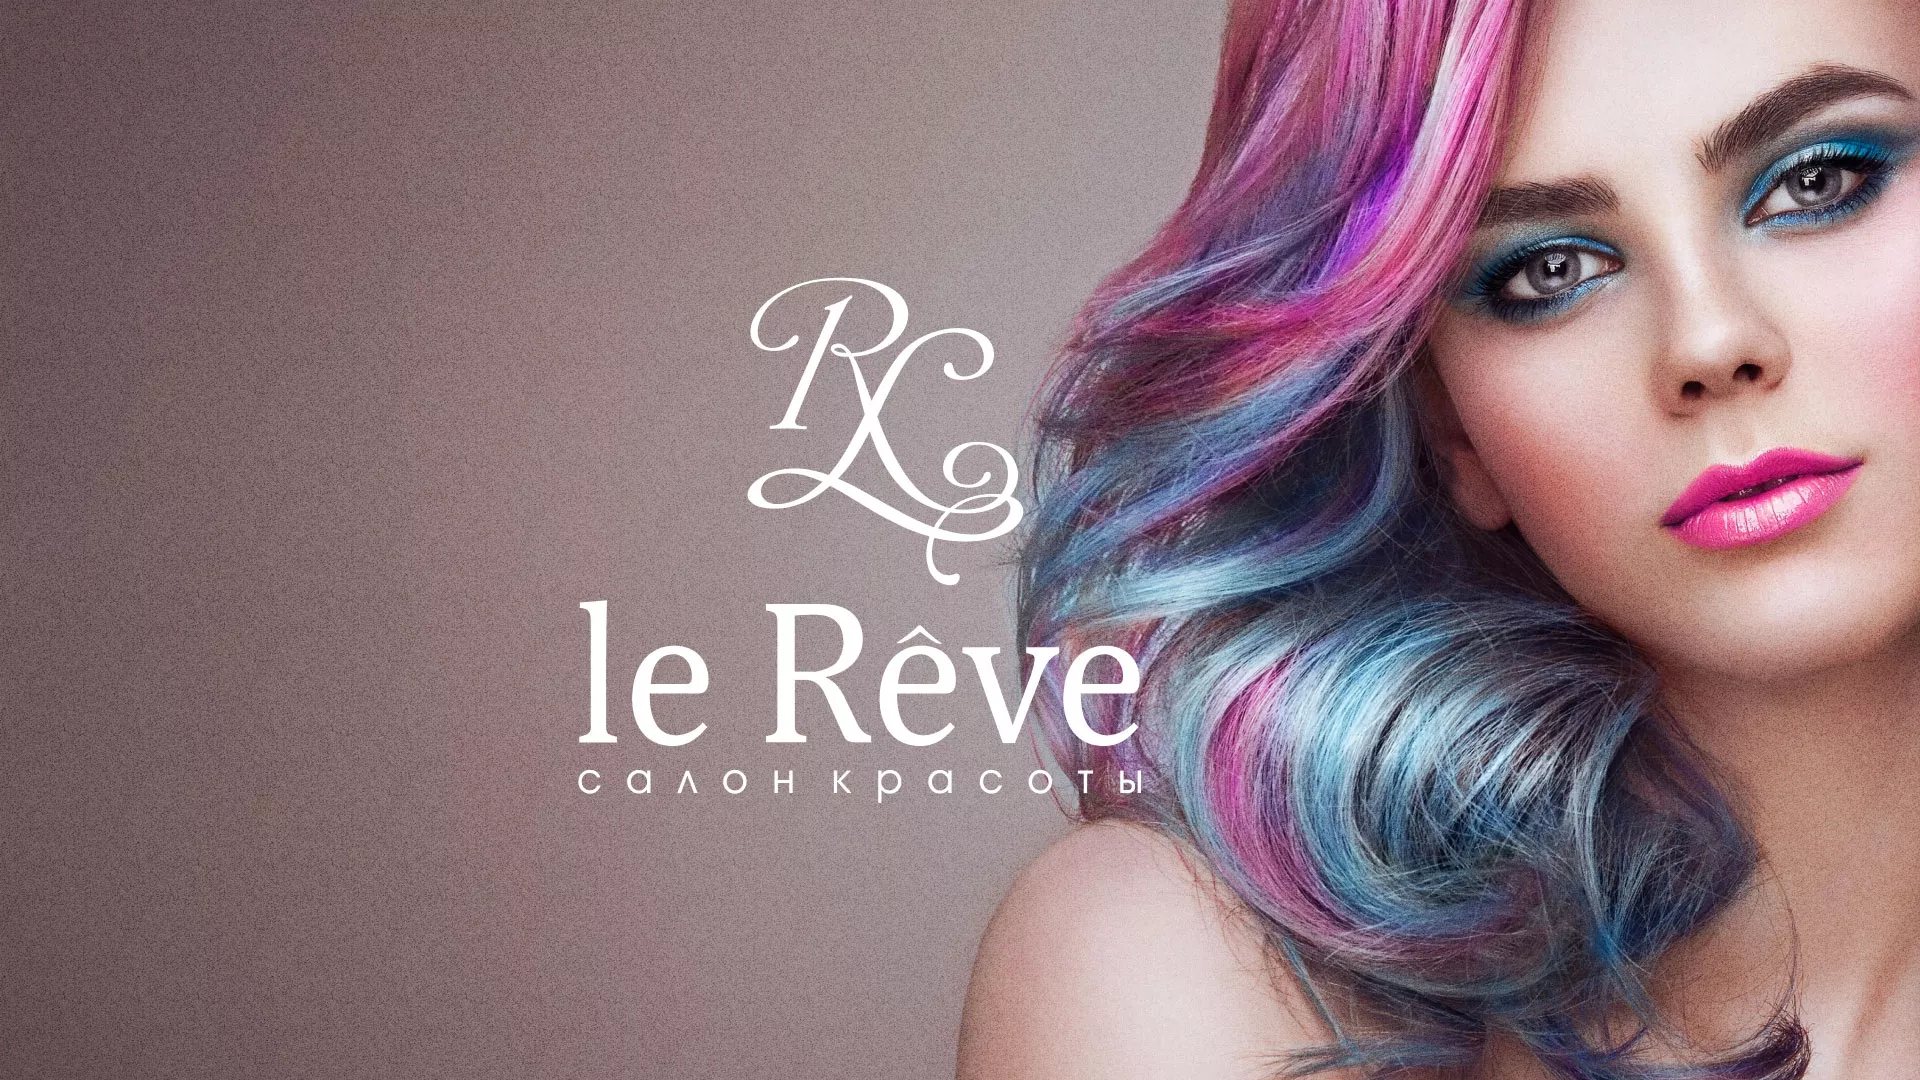 Создание сайта для салона красоты «Le Reve» в Донецке